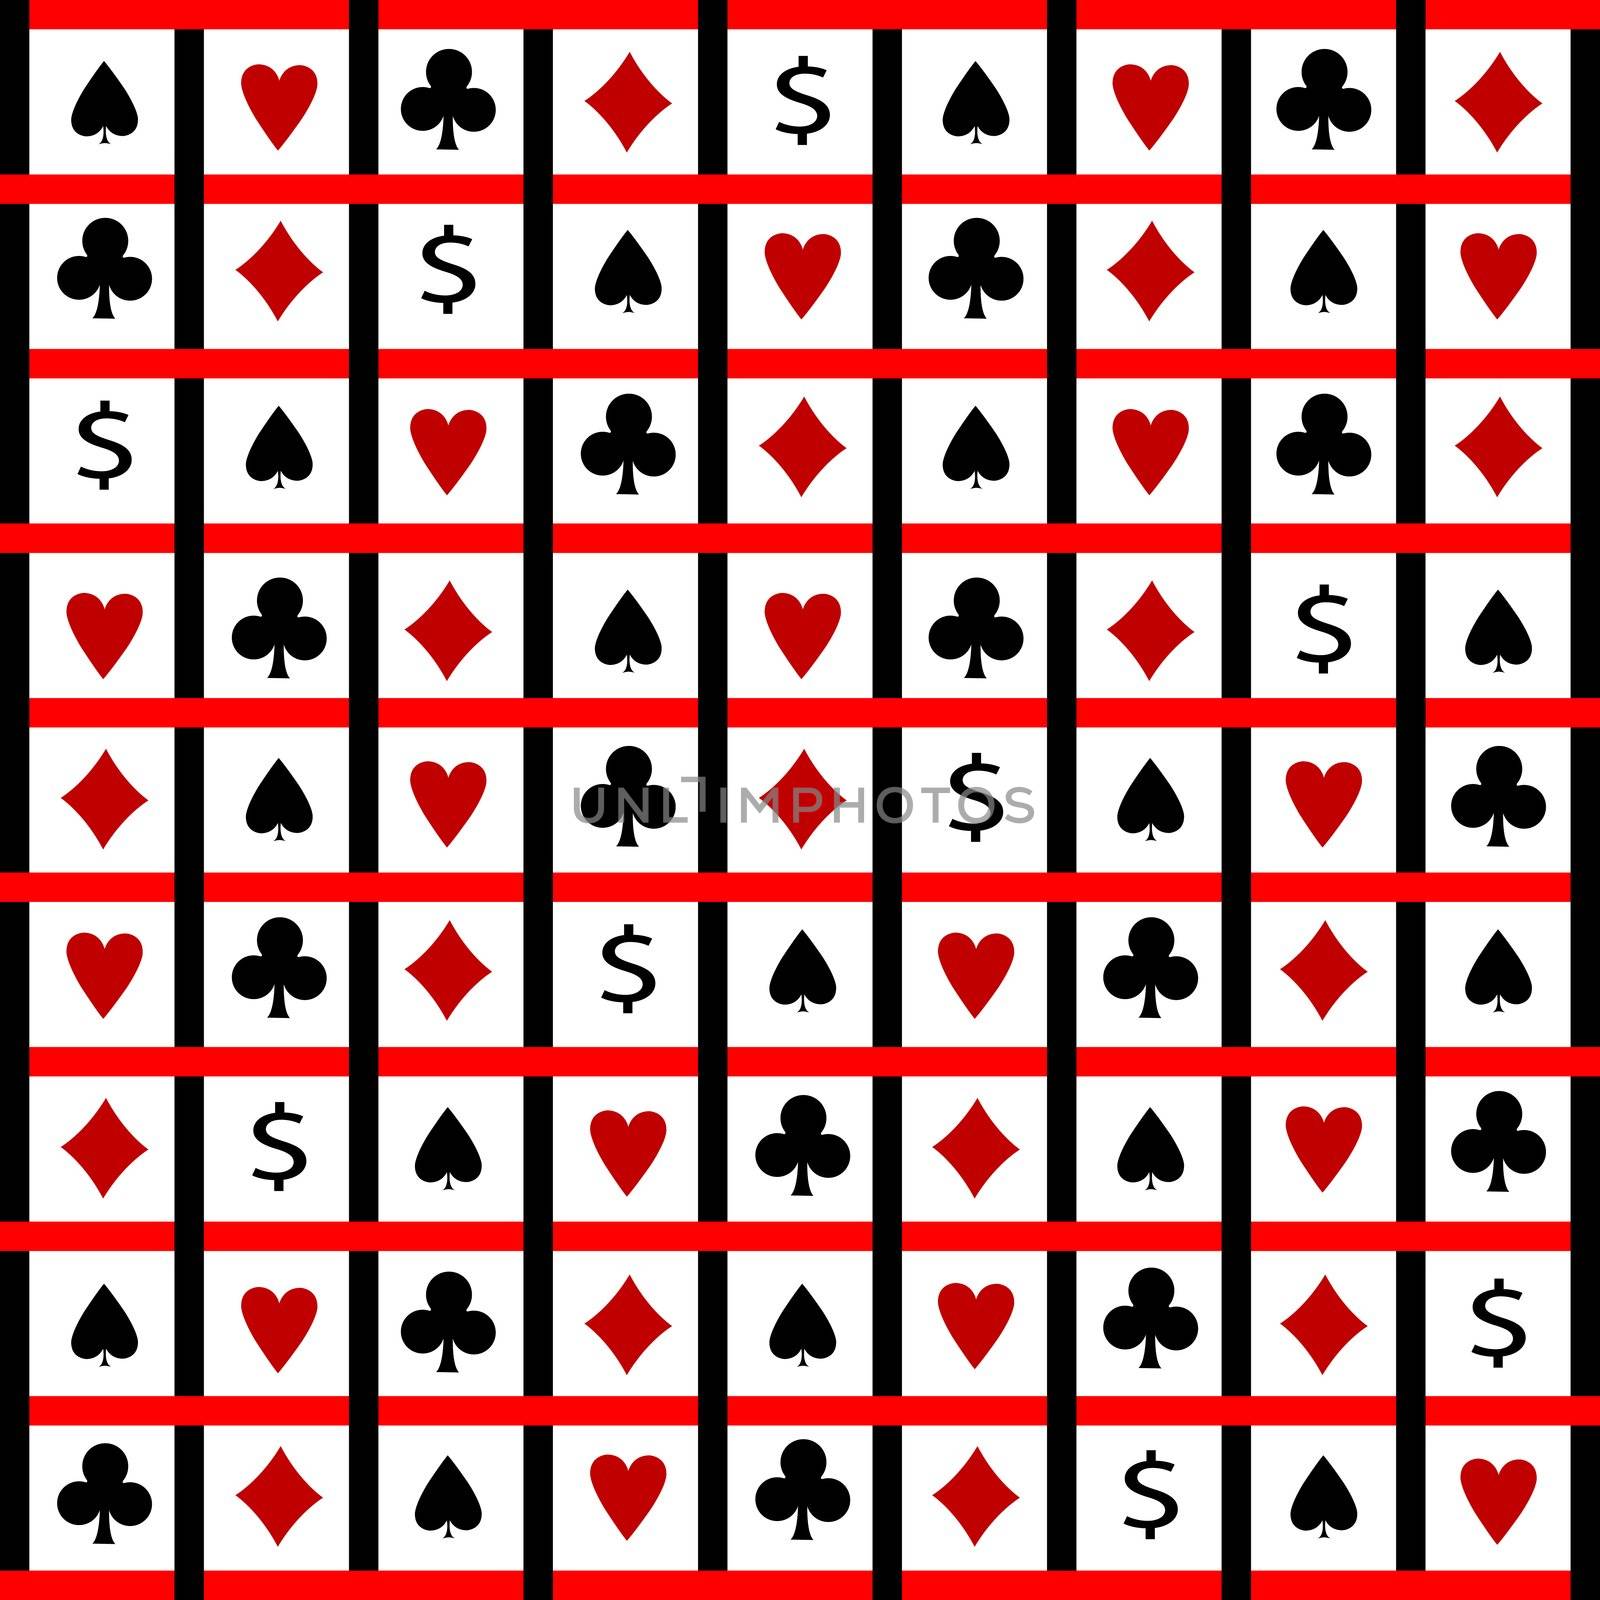 card symbols composition by robertosch